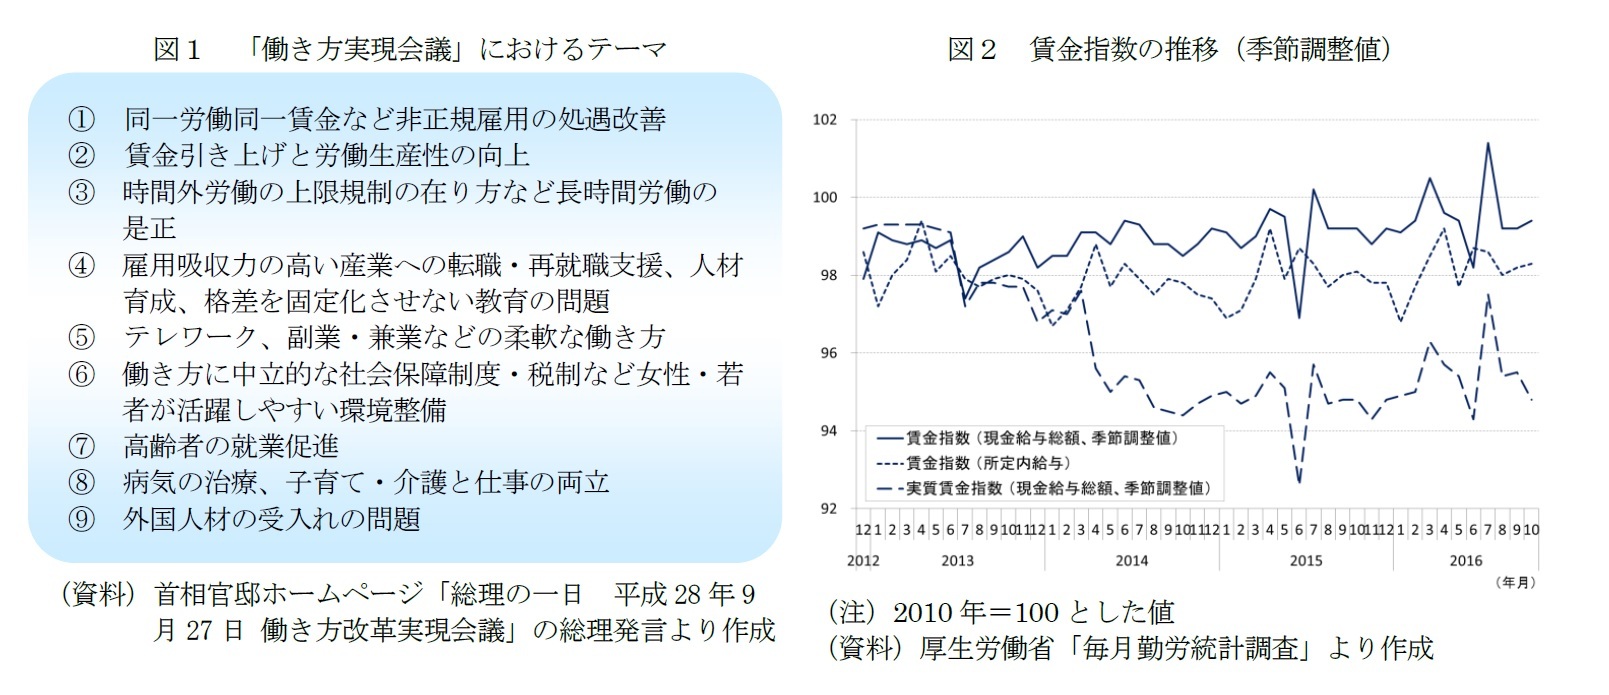 図１　「働き方実現会議」におけるテーマ/図２　賃金指数の推移（季節調整値）